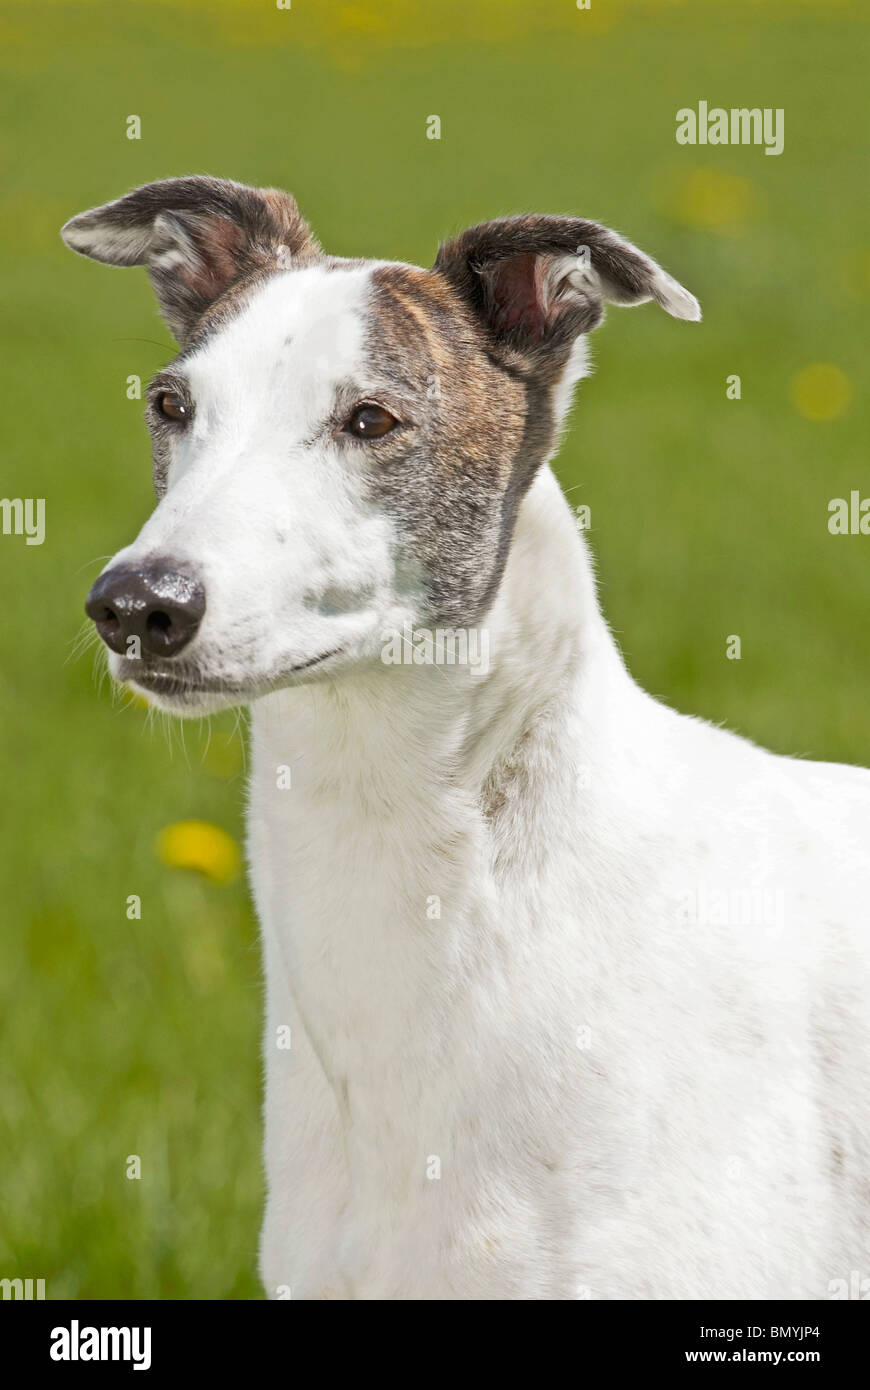 Magyar Agar dog portrait Stock Photo